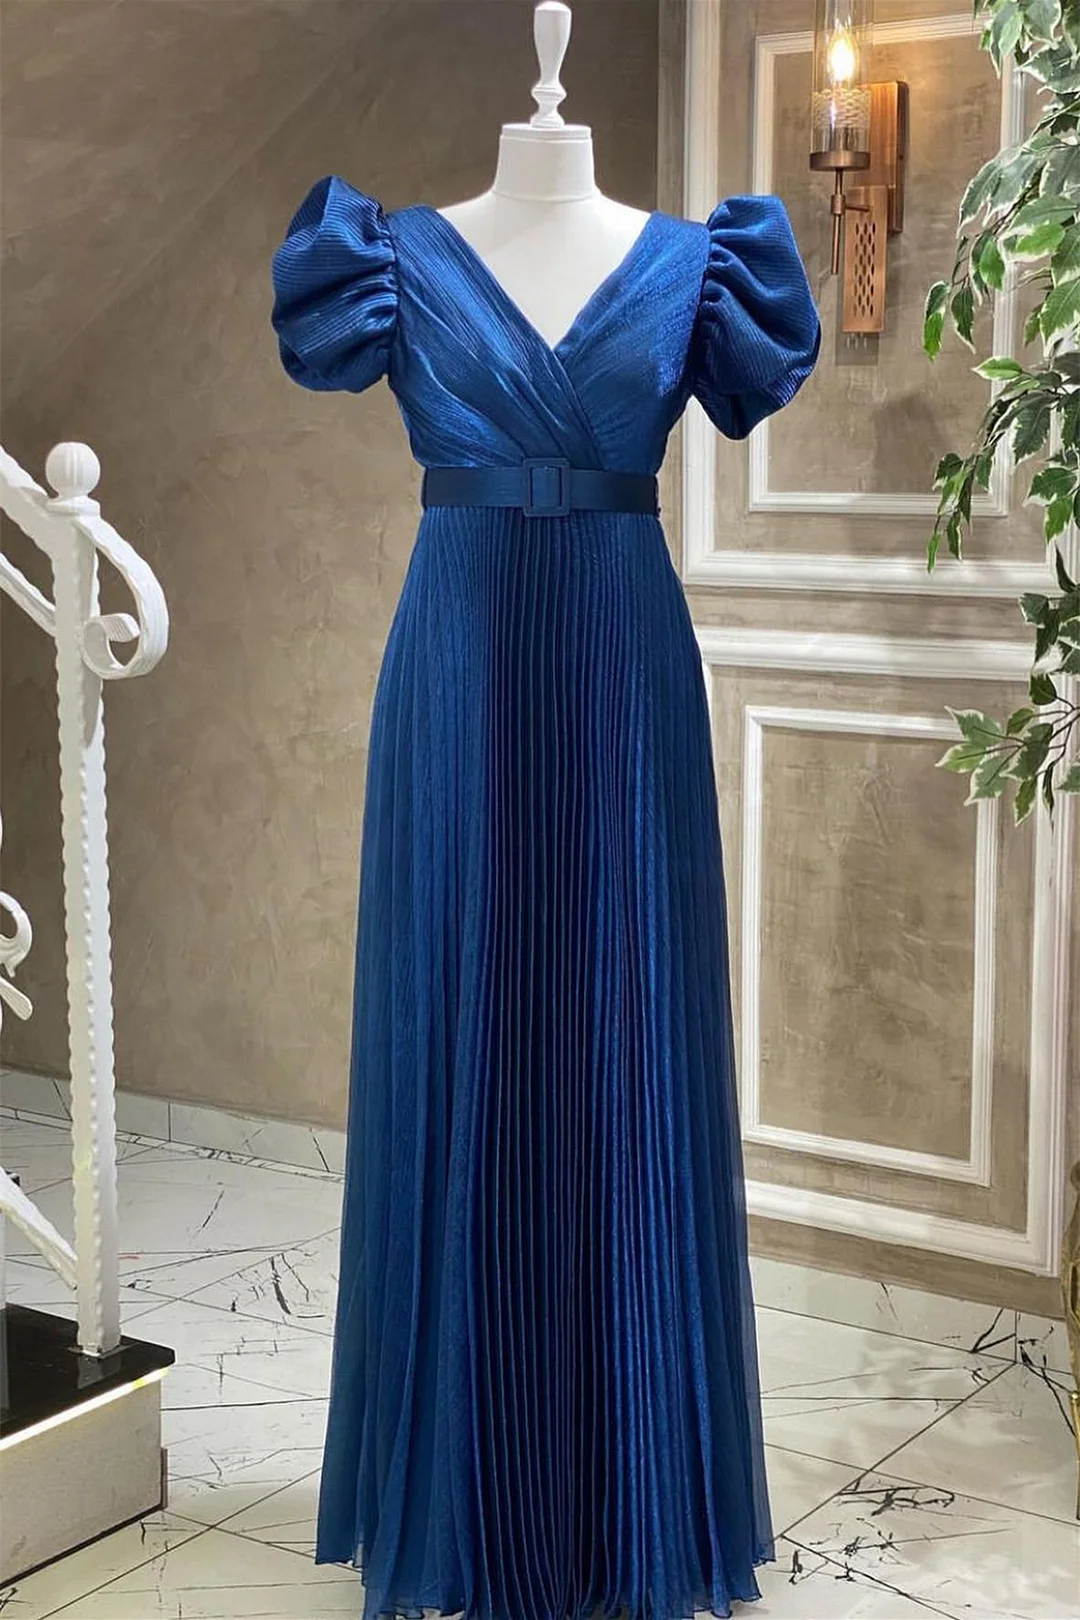 Miabel V-Neck Evening Dress Short Sleeves With Belt Online Blue Royal